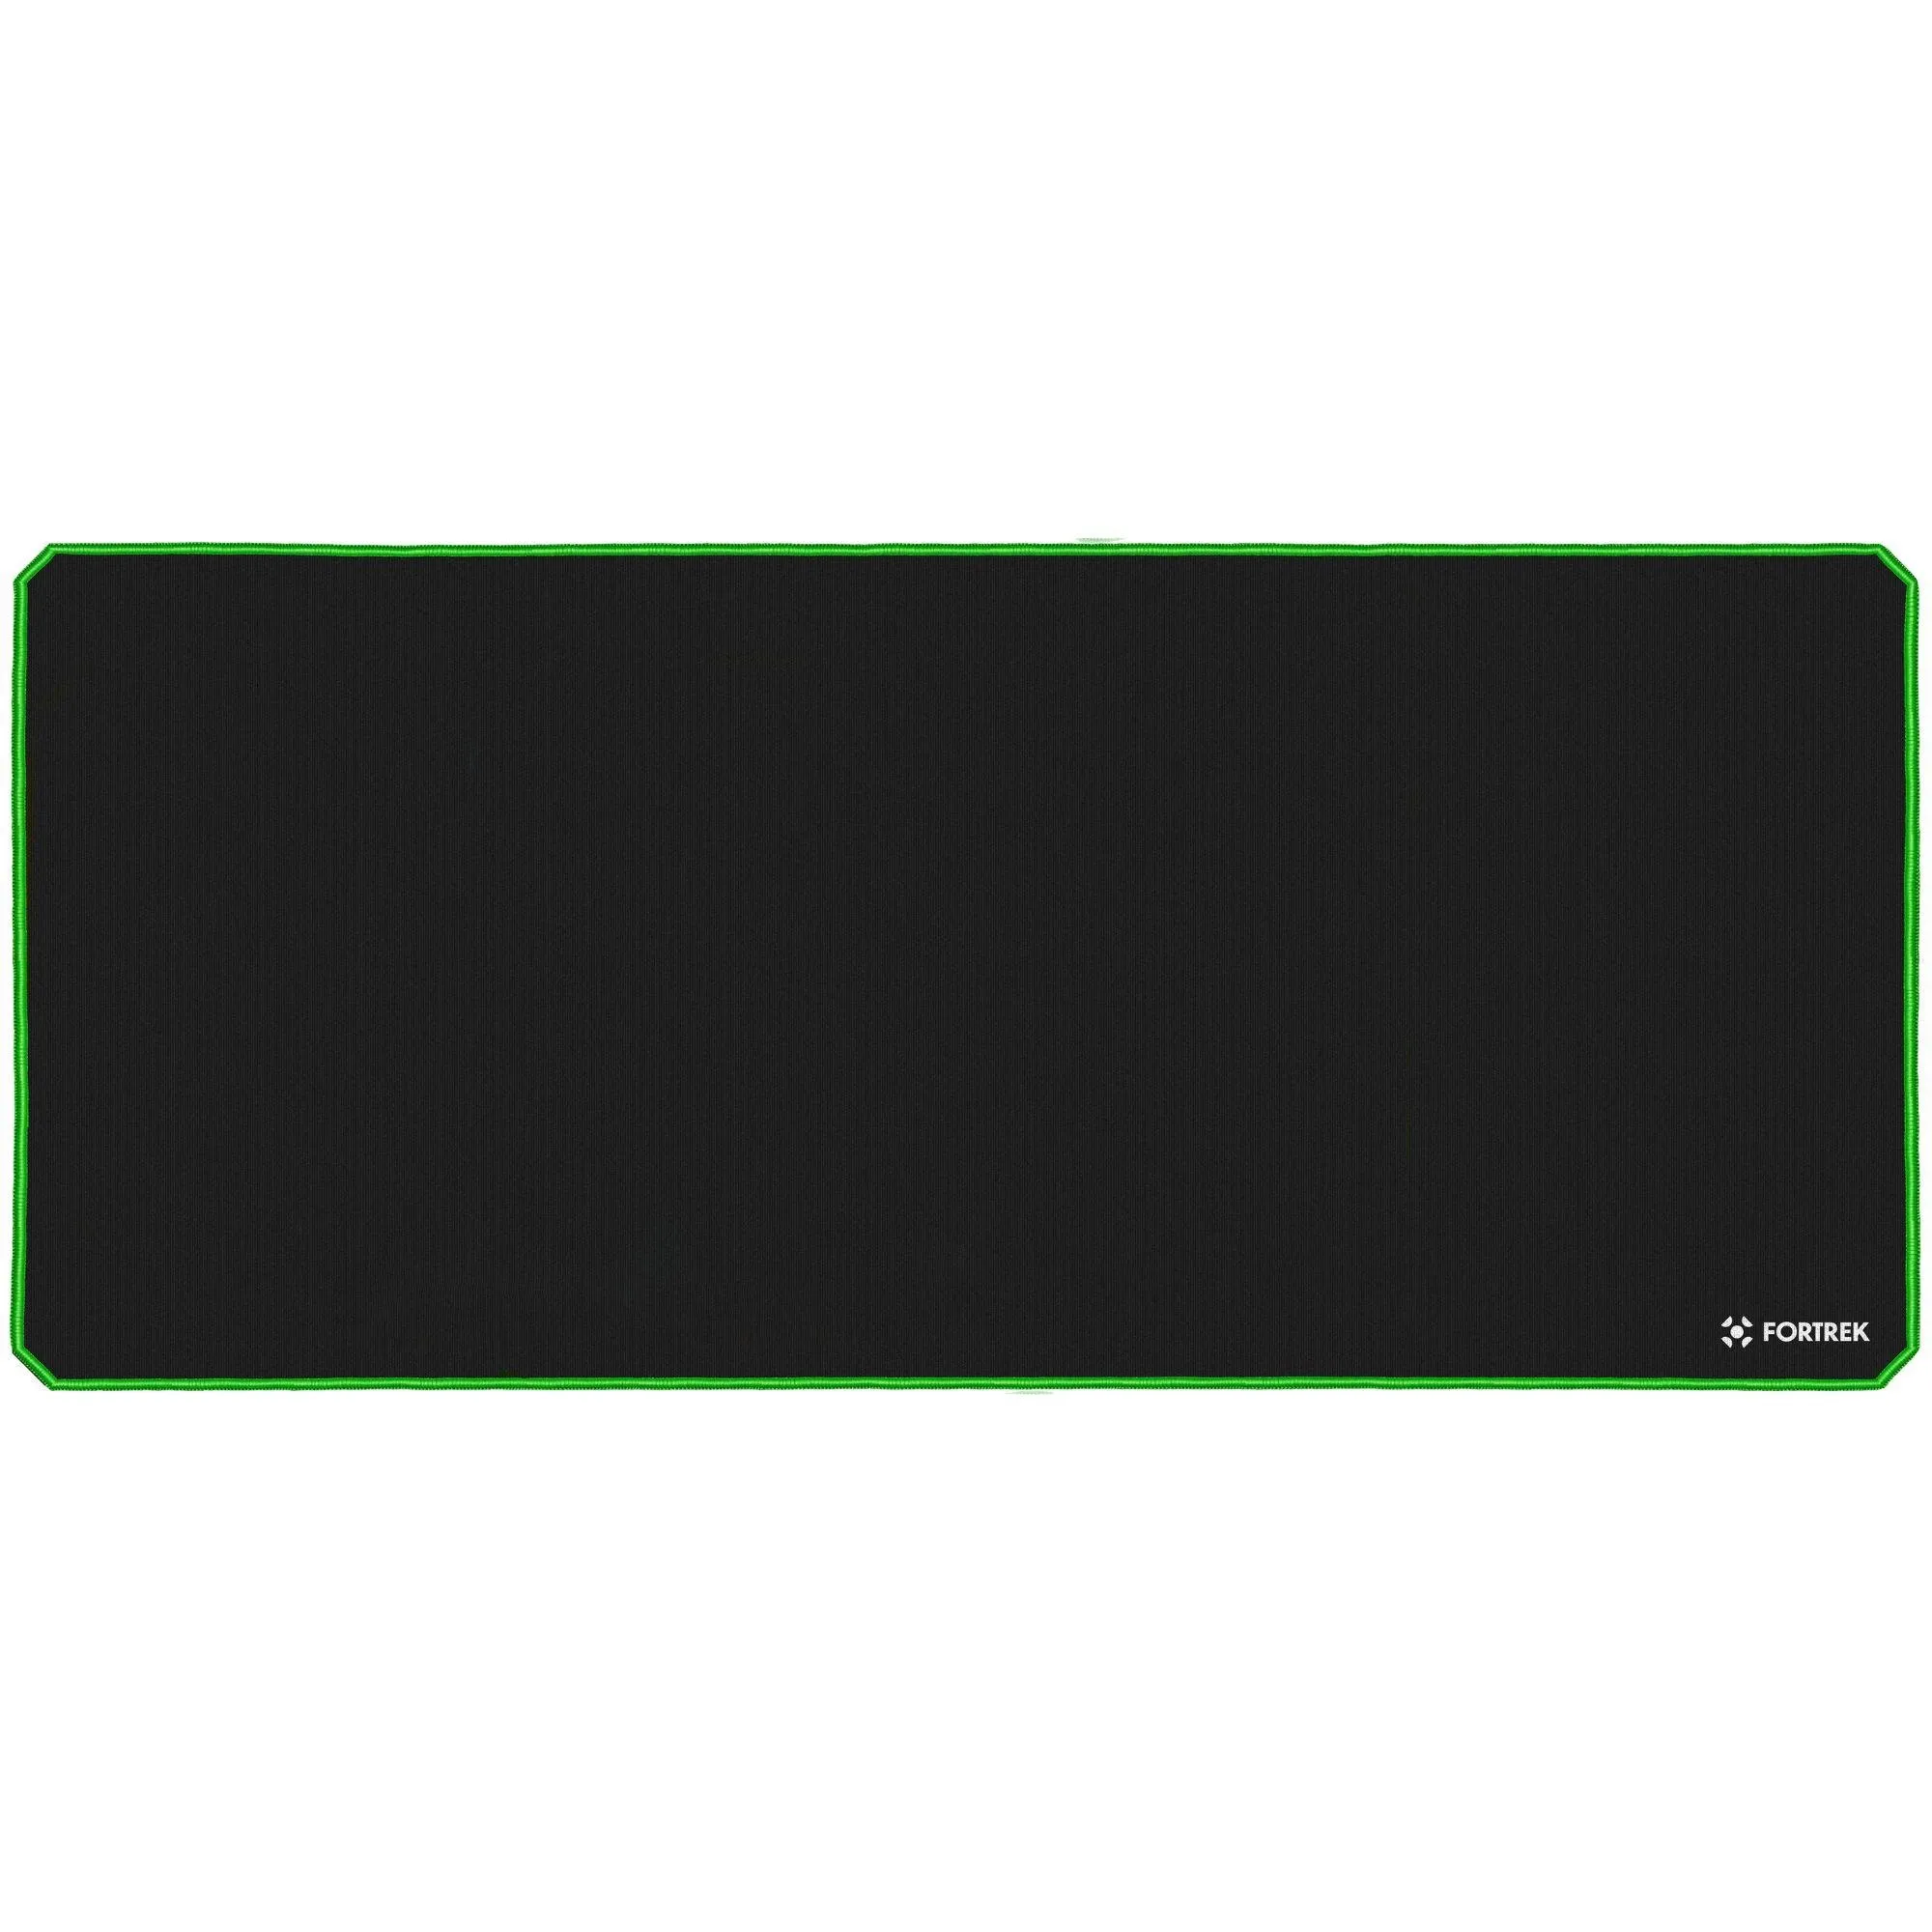 Mouse Pad Gamer Fortrek Speed MPG104 (900x400mm) Verde por 64,00 à vista no boleto/pix ou parcele em até 2x sem juros. Compre na loja Mundomax!